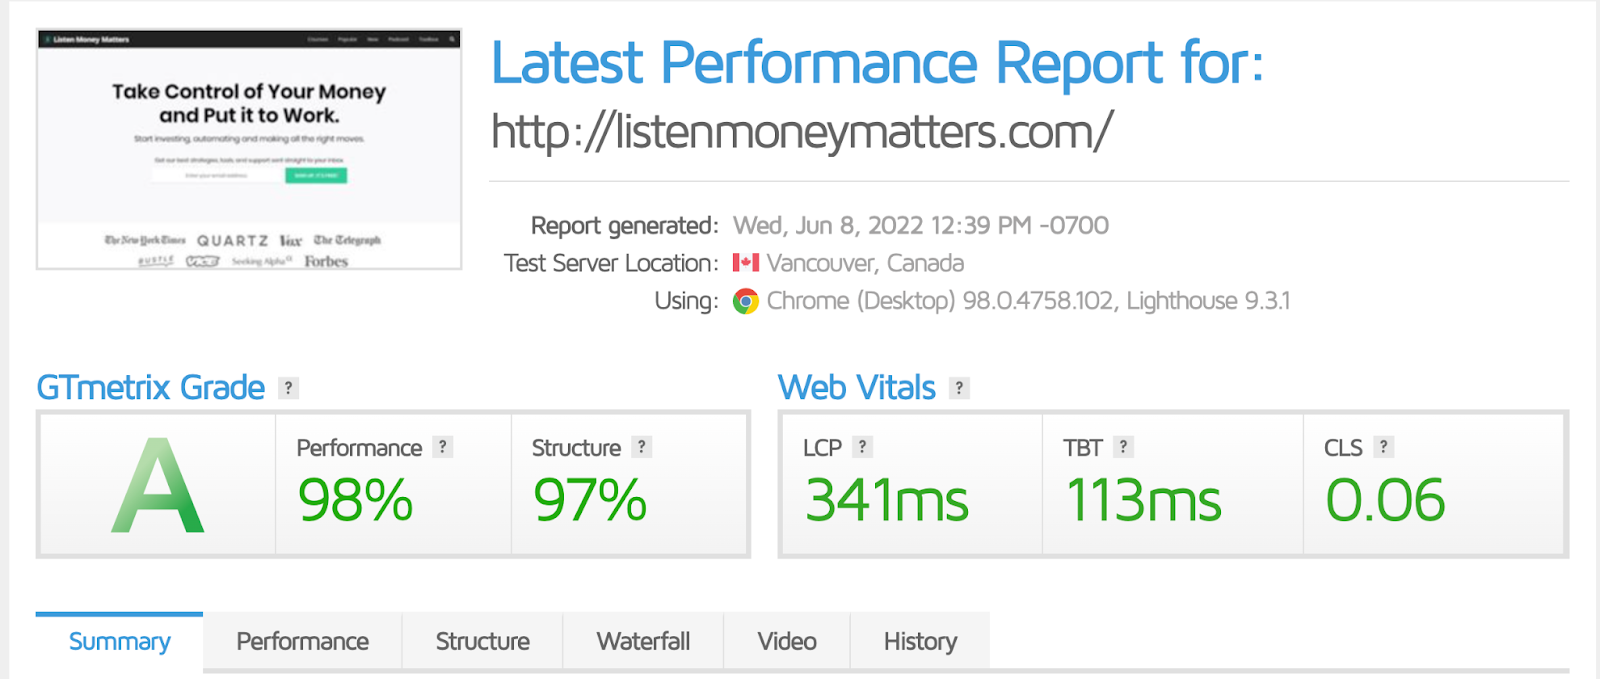 gt metrix site speed report for listen money matters